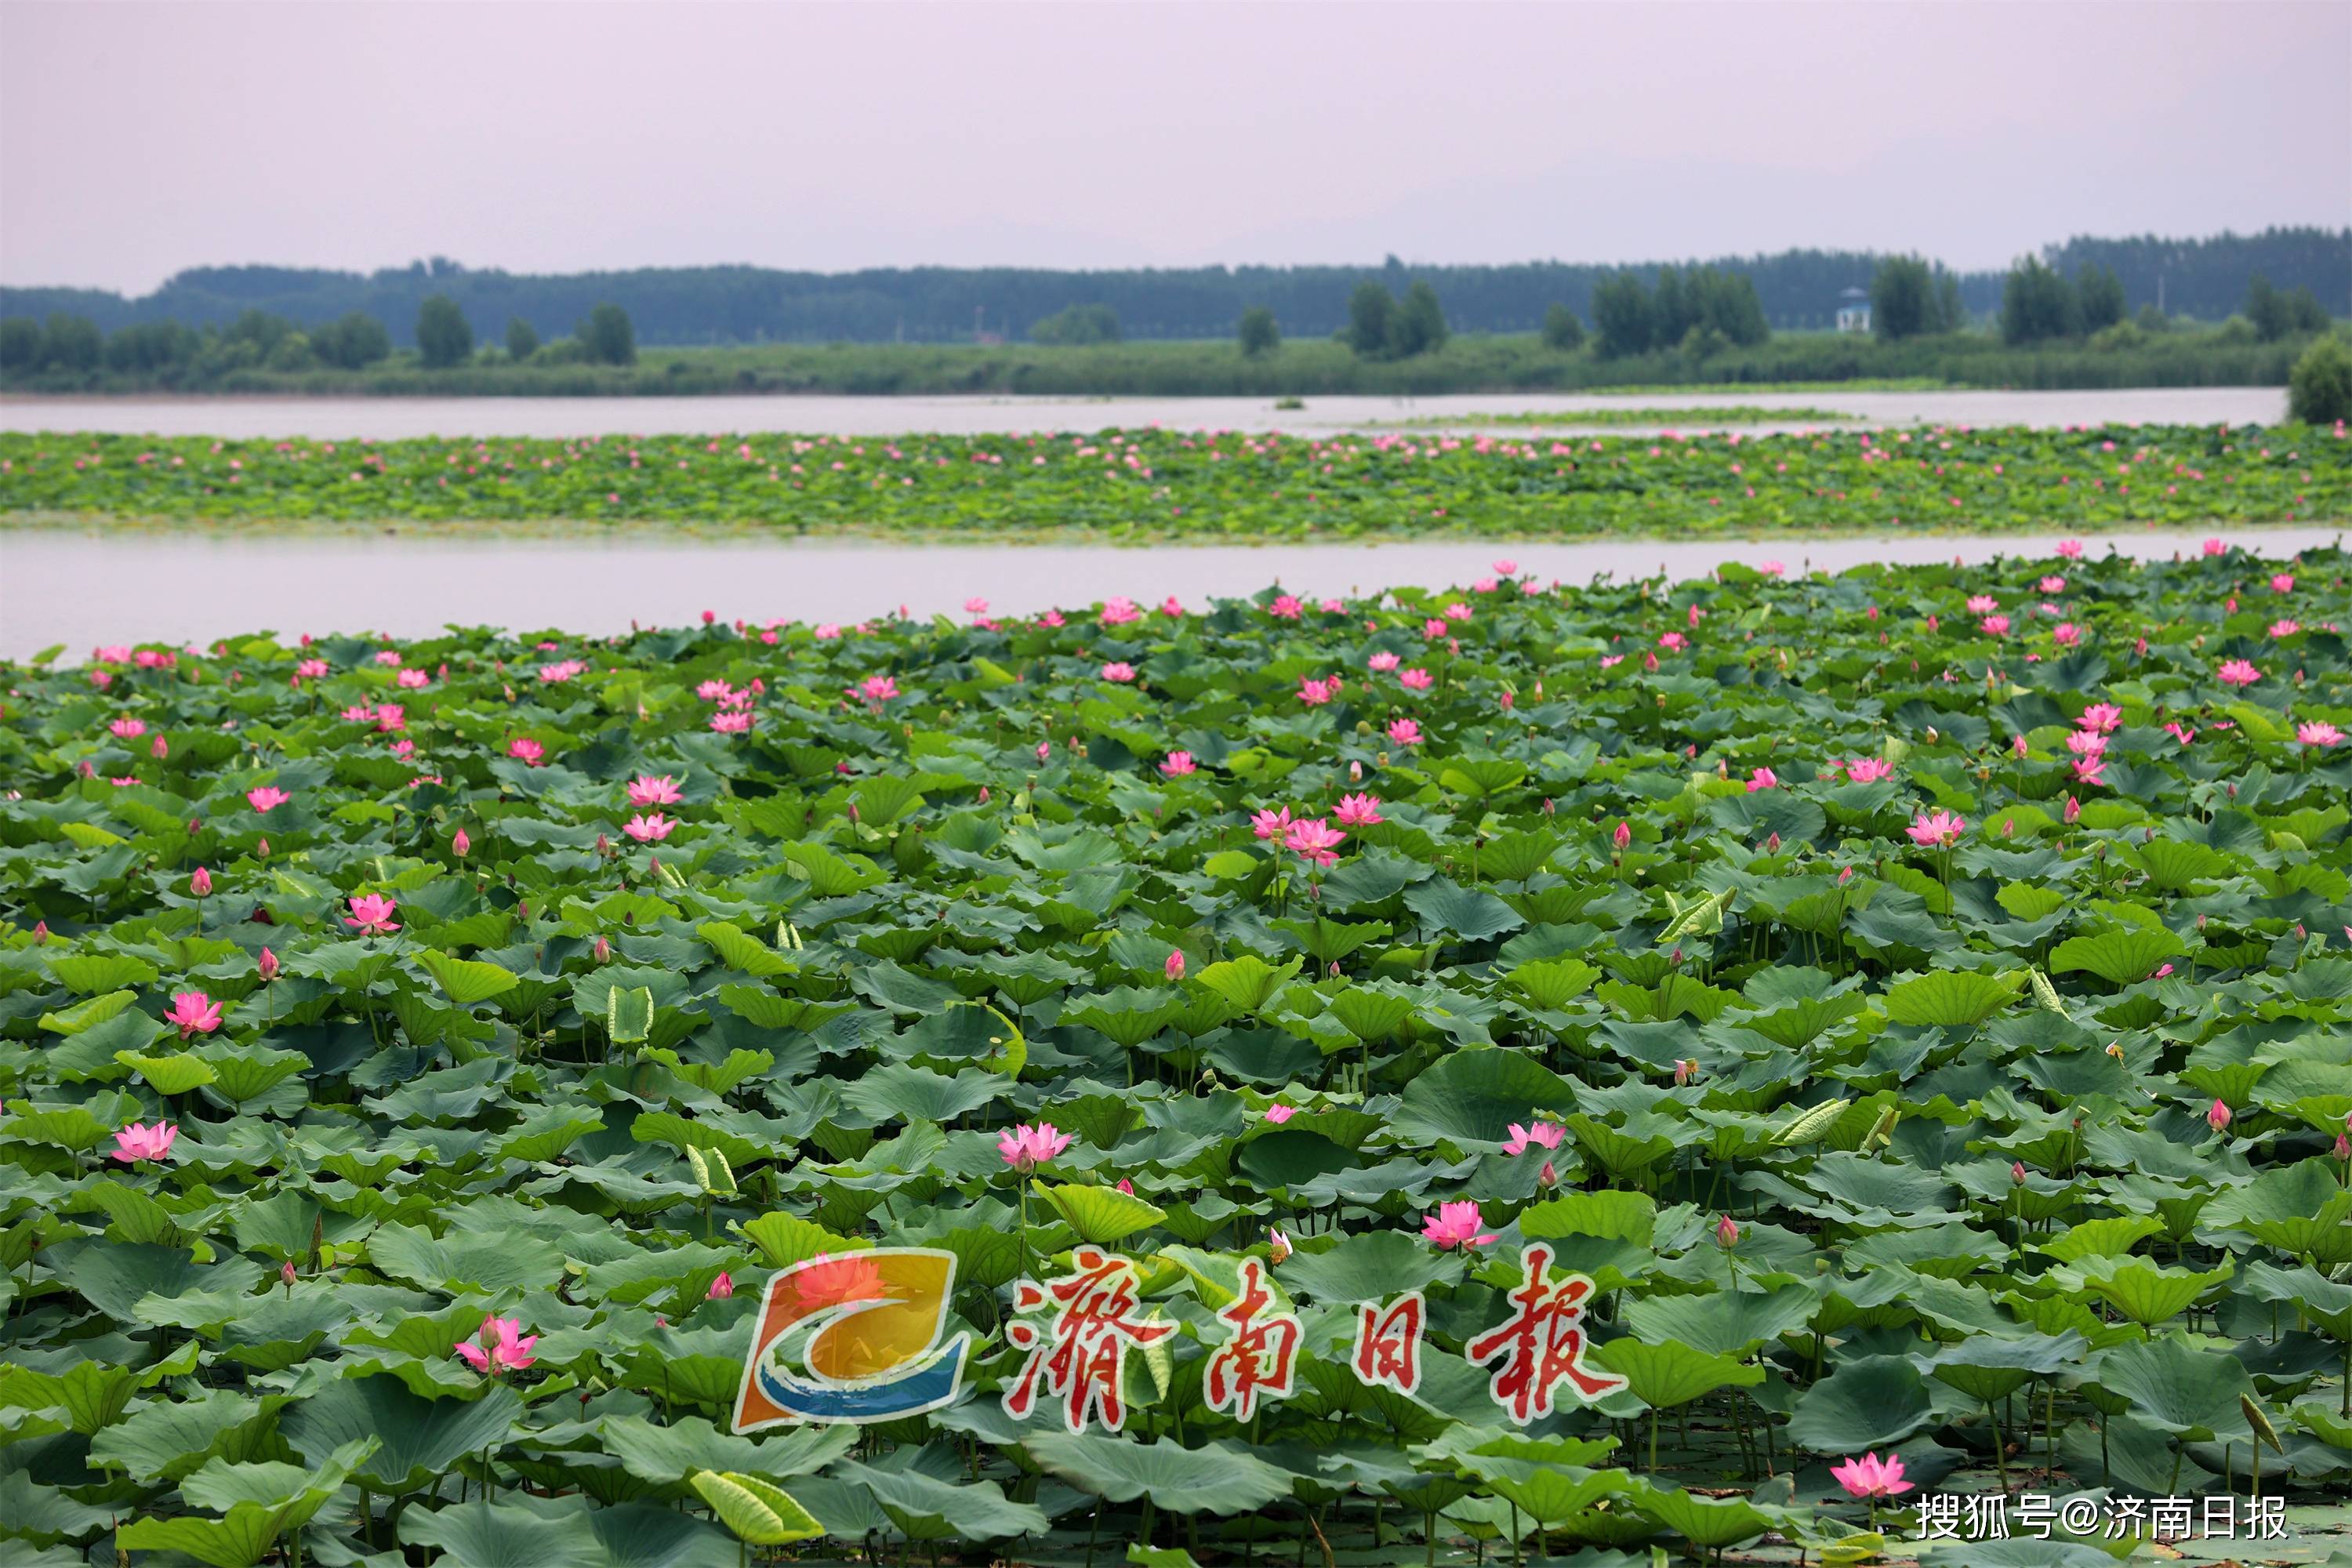 盛夏,位于济南章丘区的白云湖国家湿地公园进入一年中最美的时节,湿地